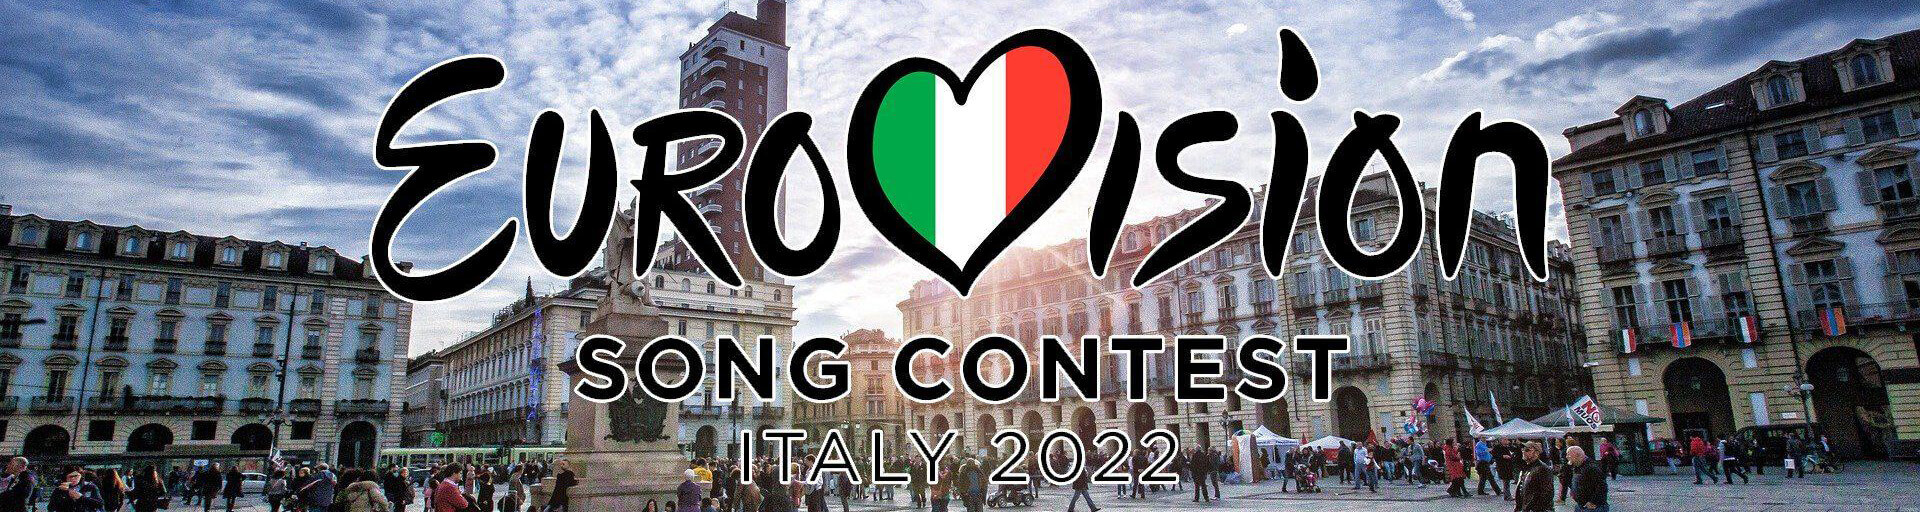 Евровидение 2022: прогнозы букмекеров, песни, участники